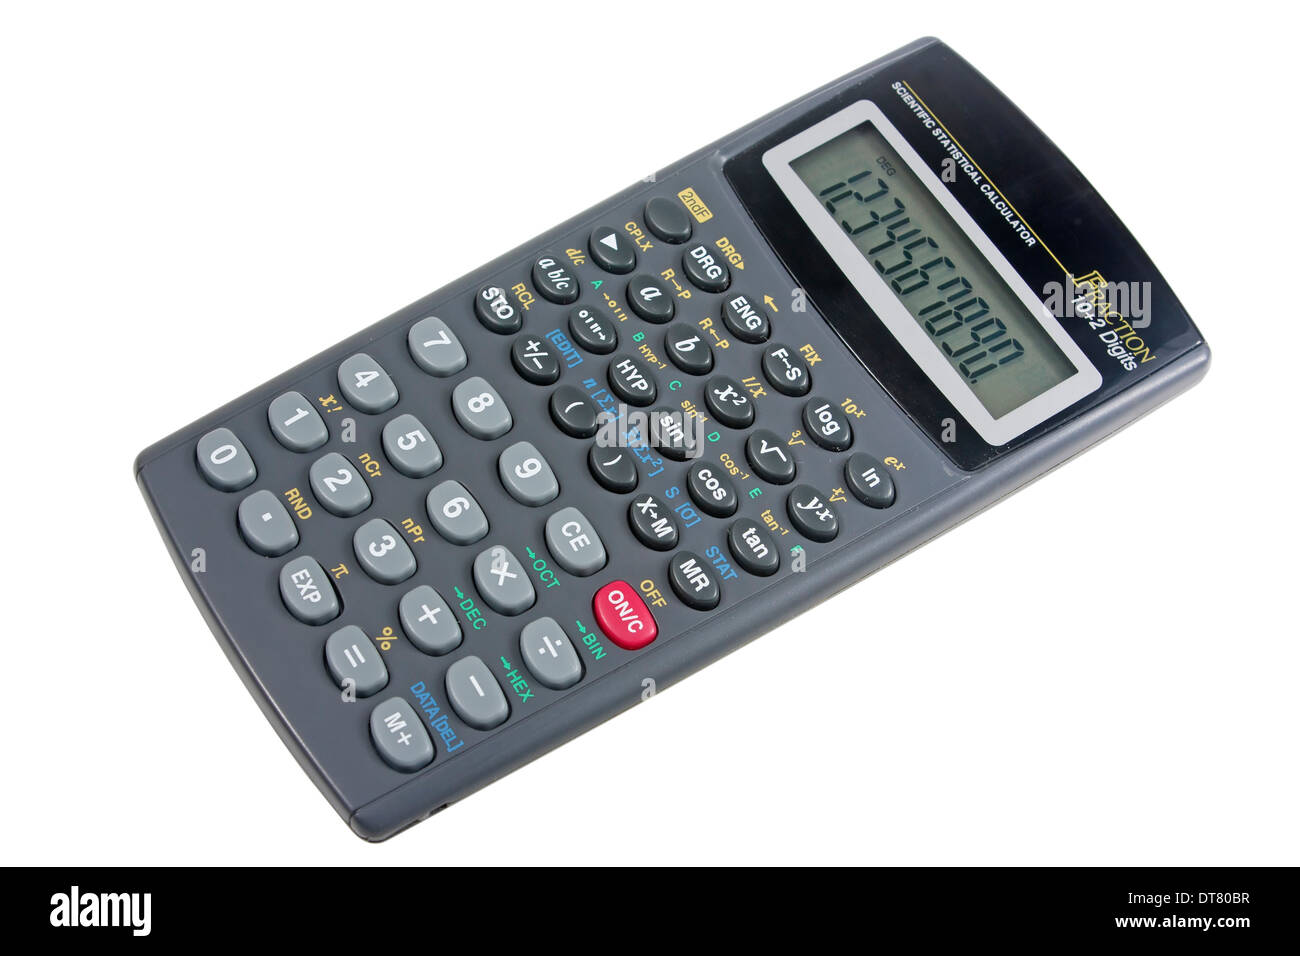 Photo de stock Détail d'une calculatrice scientifique programmable